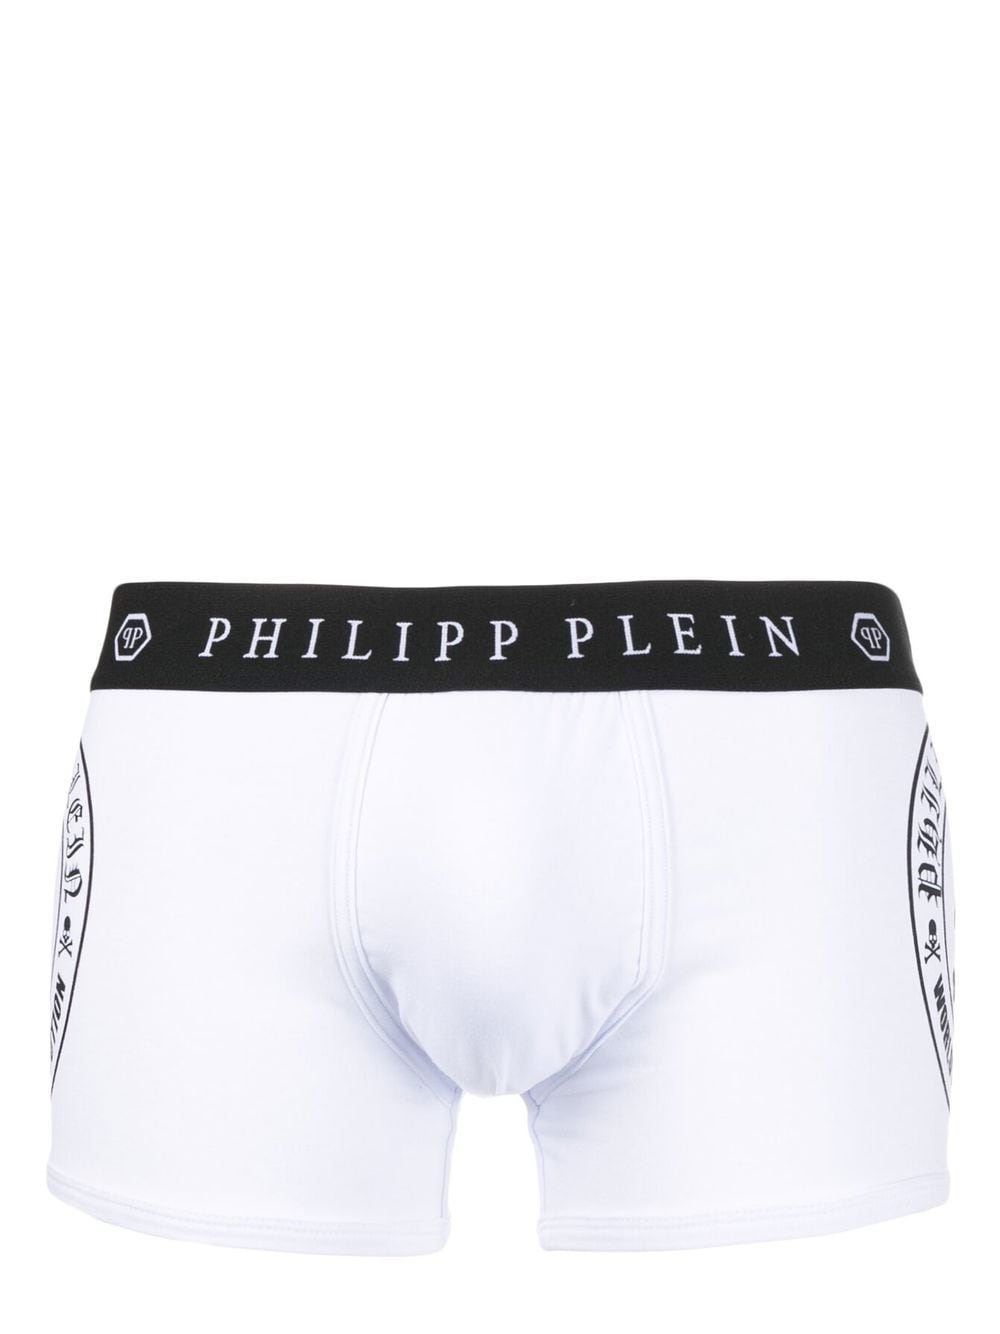 Philipp Plein Skull Bones boxer shorts - White von Philipp Plein